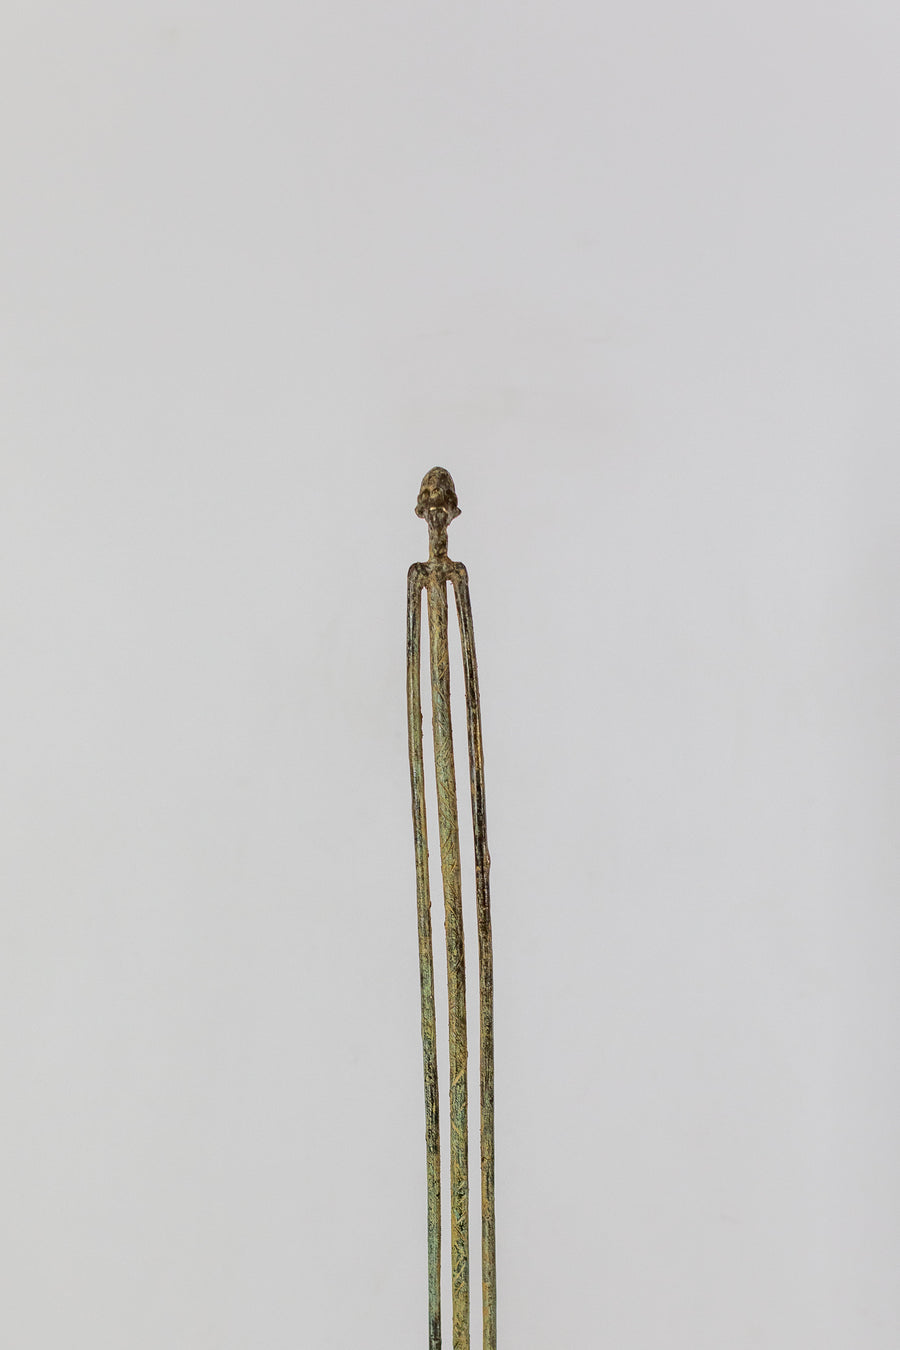 Hombre Dogón Sitakili - País: Mali (Dogón)  Material: Aleación de bronce  Medidas: Altura 99cm